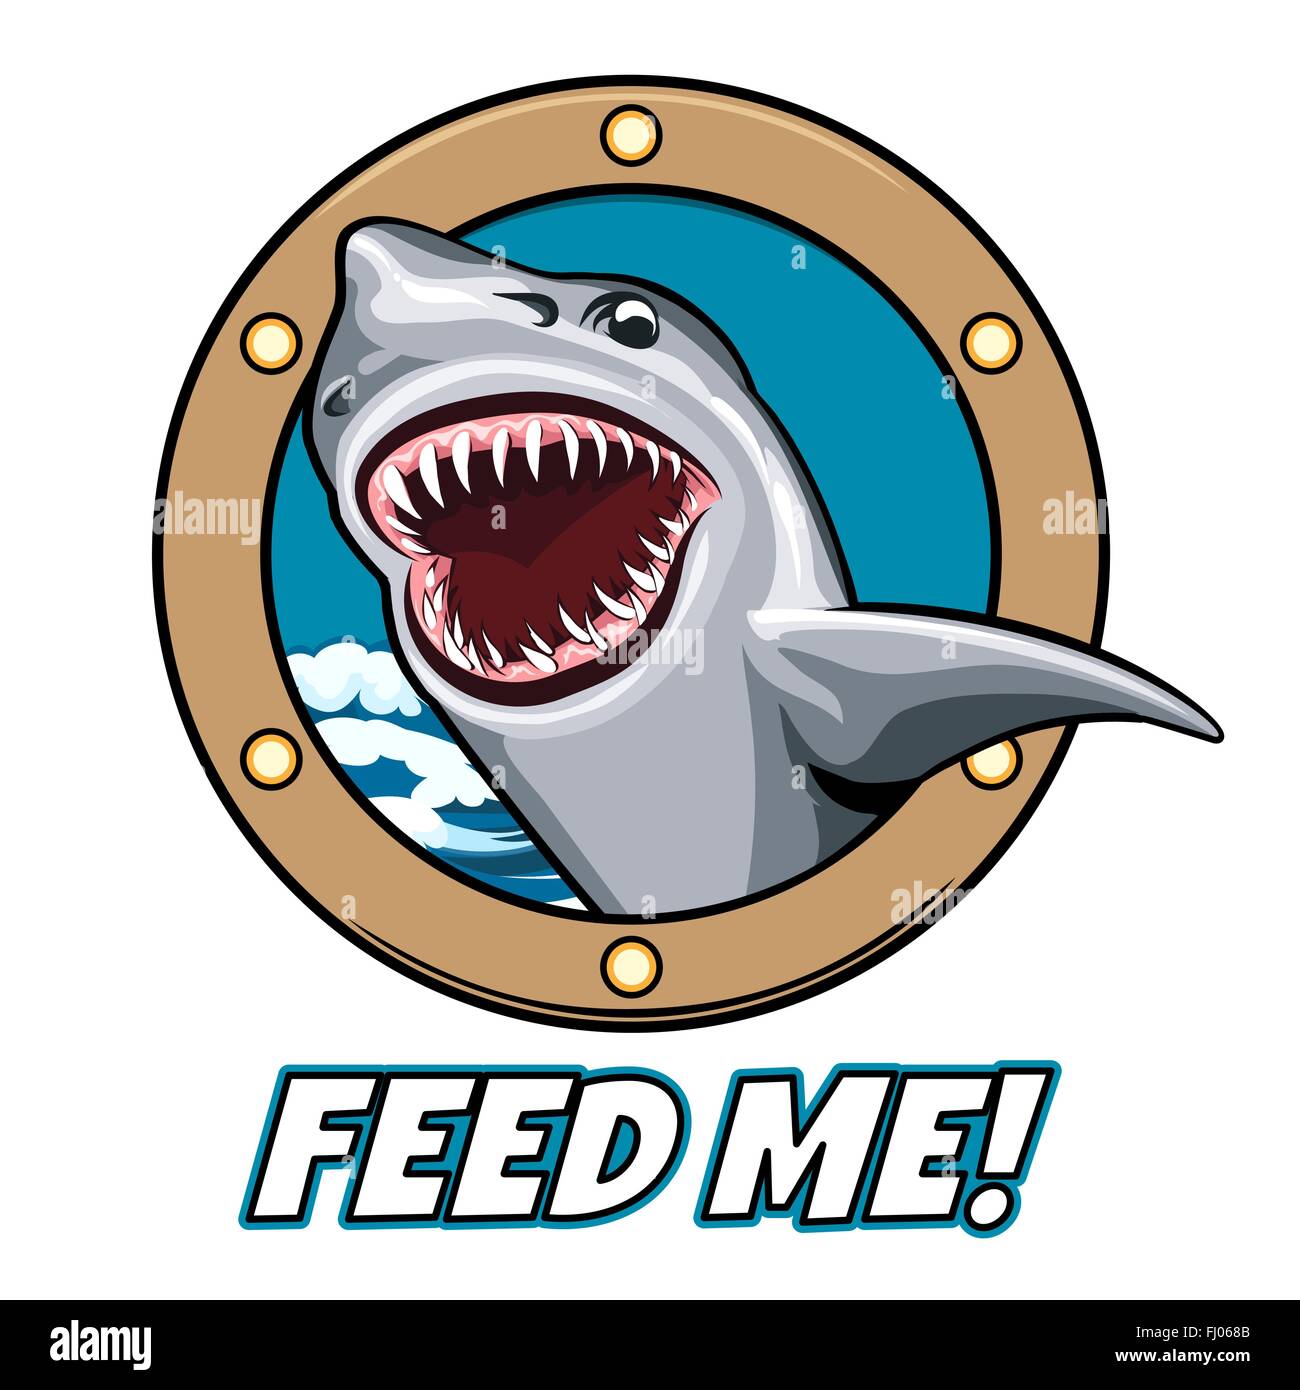 L'emblème de la tête de requin, la bouche ouverte dans la fenêtre de navire et le libellé Feed Me. Cartoon style. Gratuitement police utilisée. Illustration de Vecteur